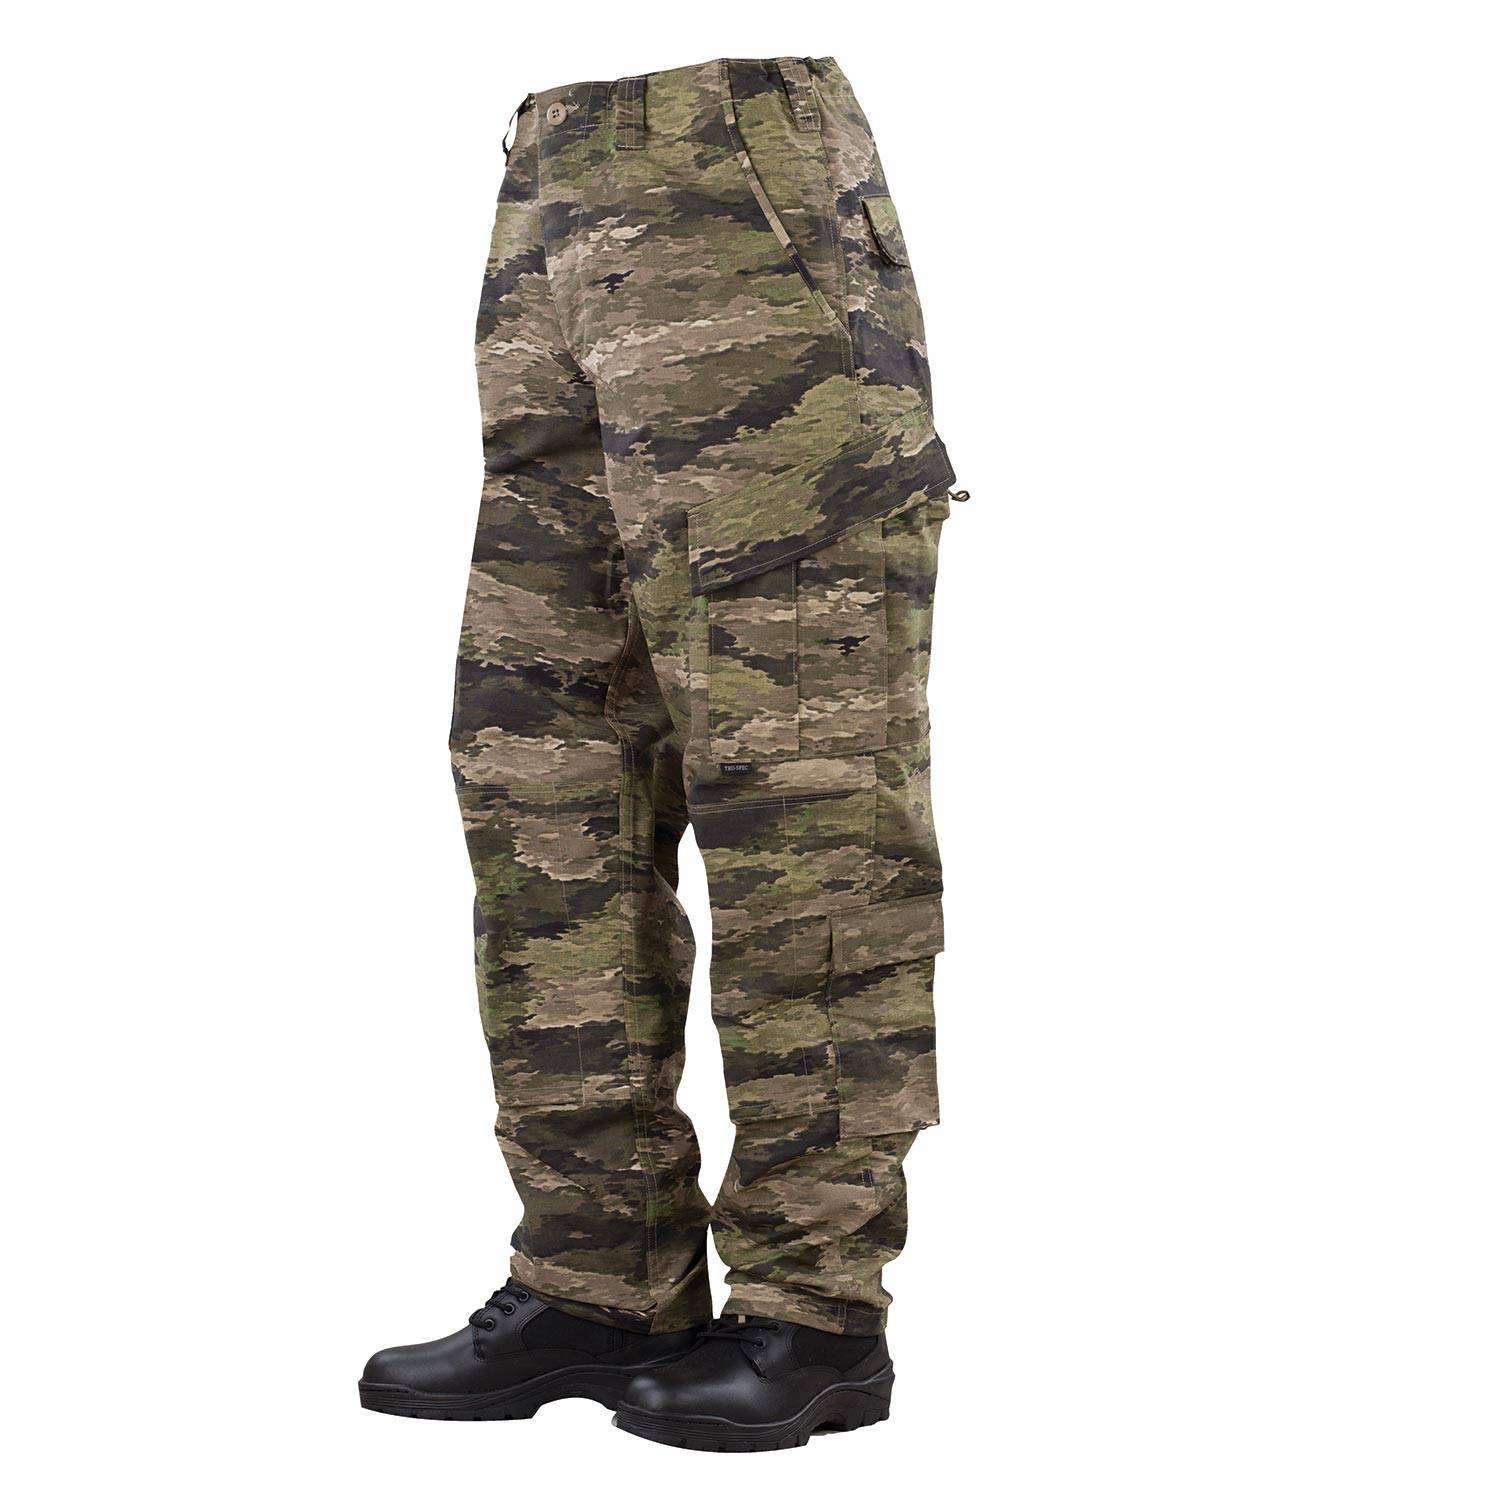 Tru Spec T.R.U. Tactical Response Uniform Pants